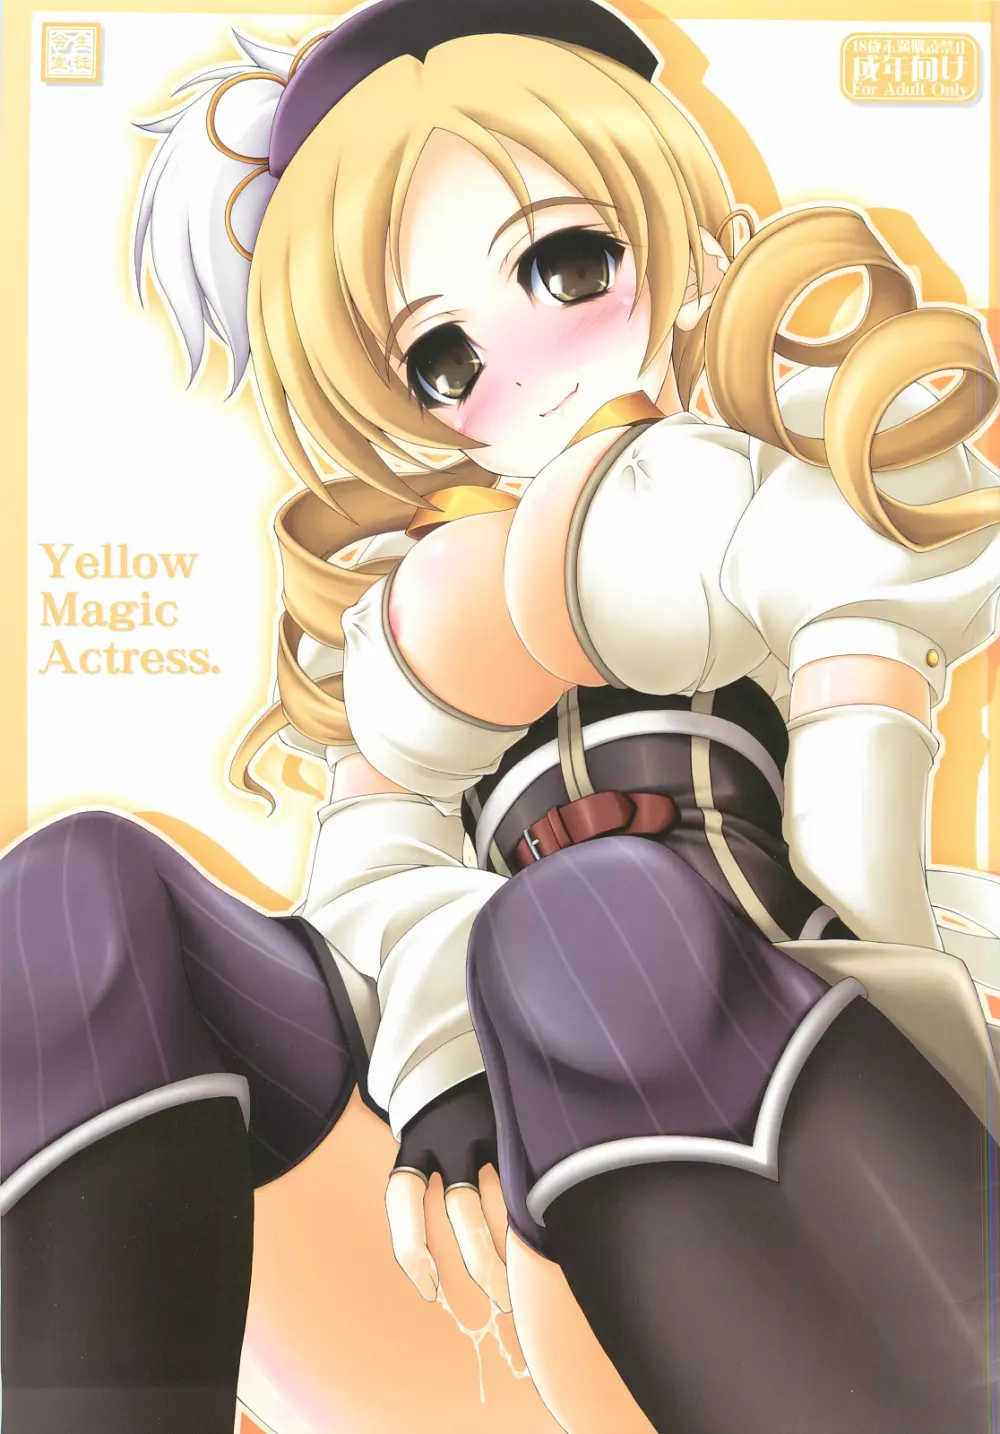 Yellow Magic Actress